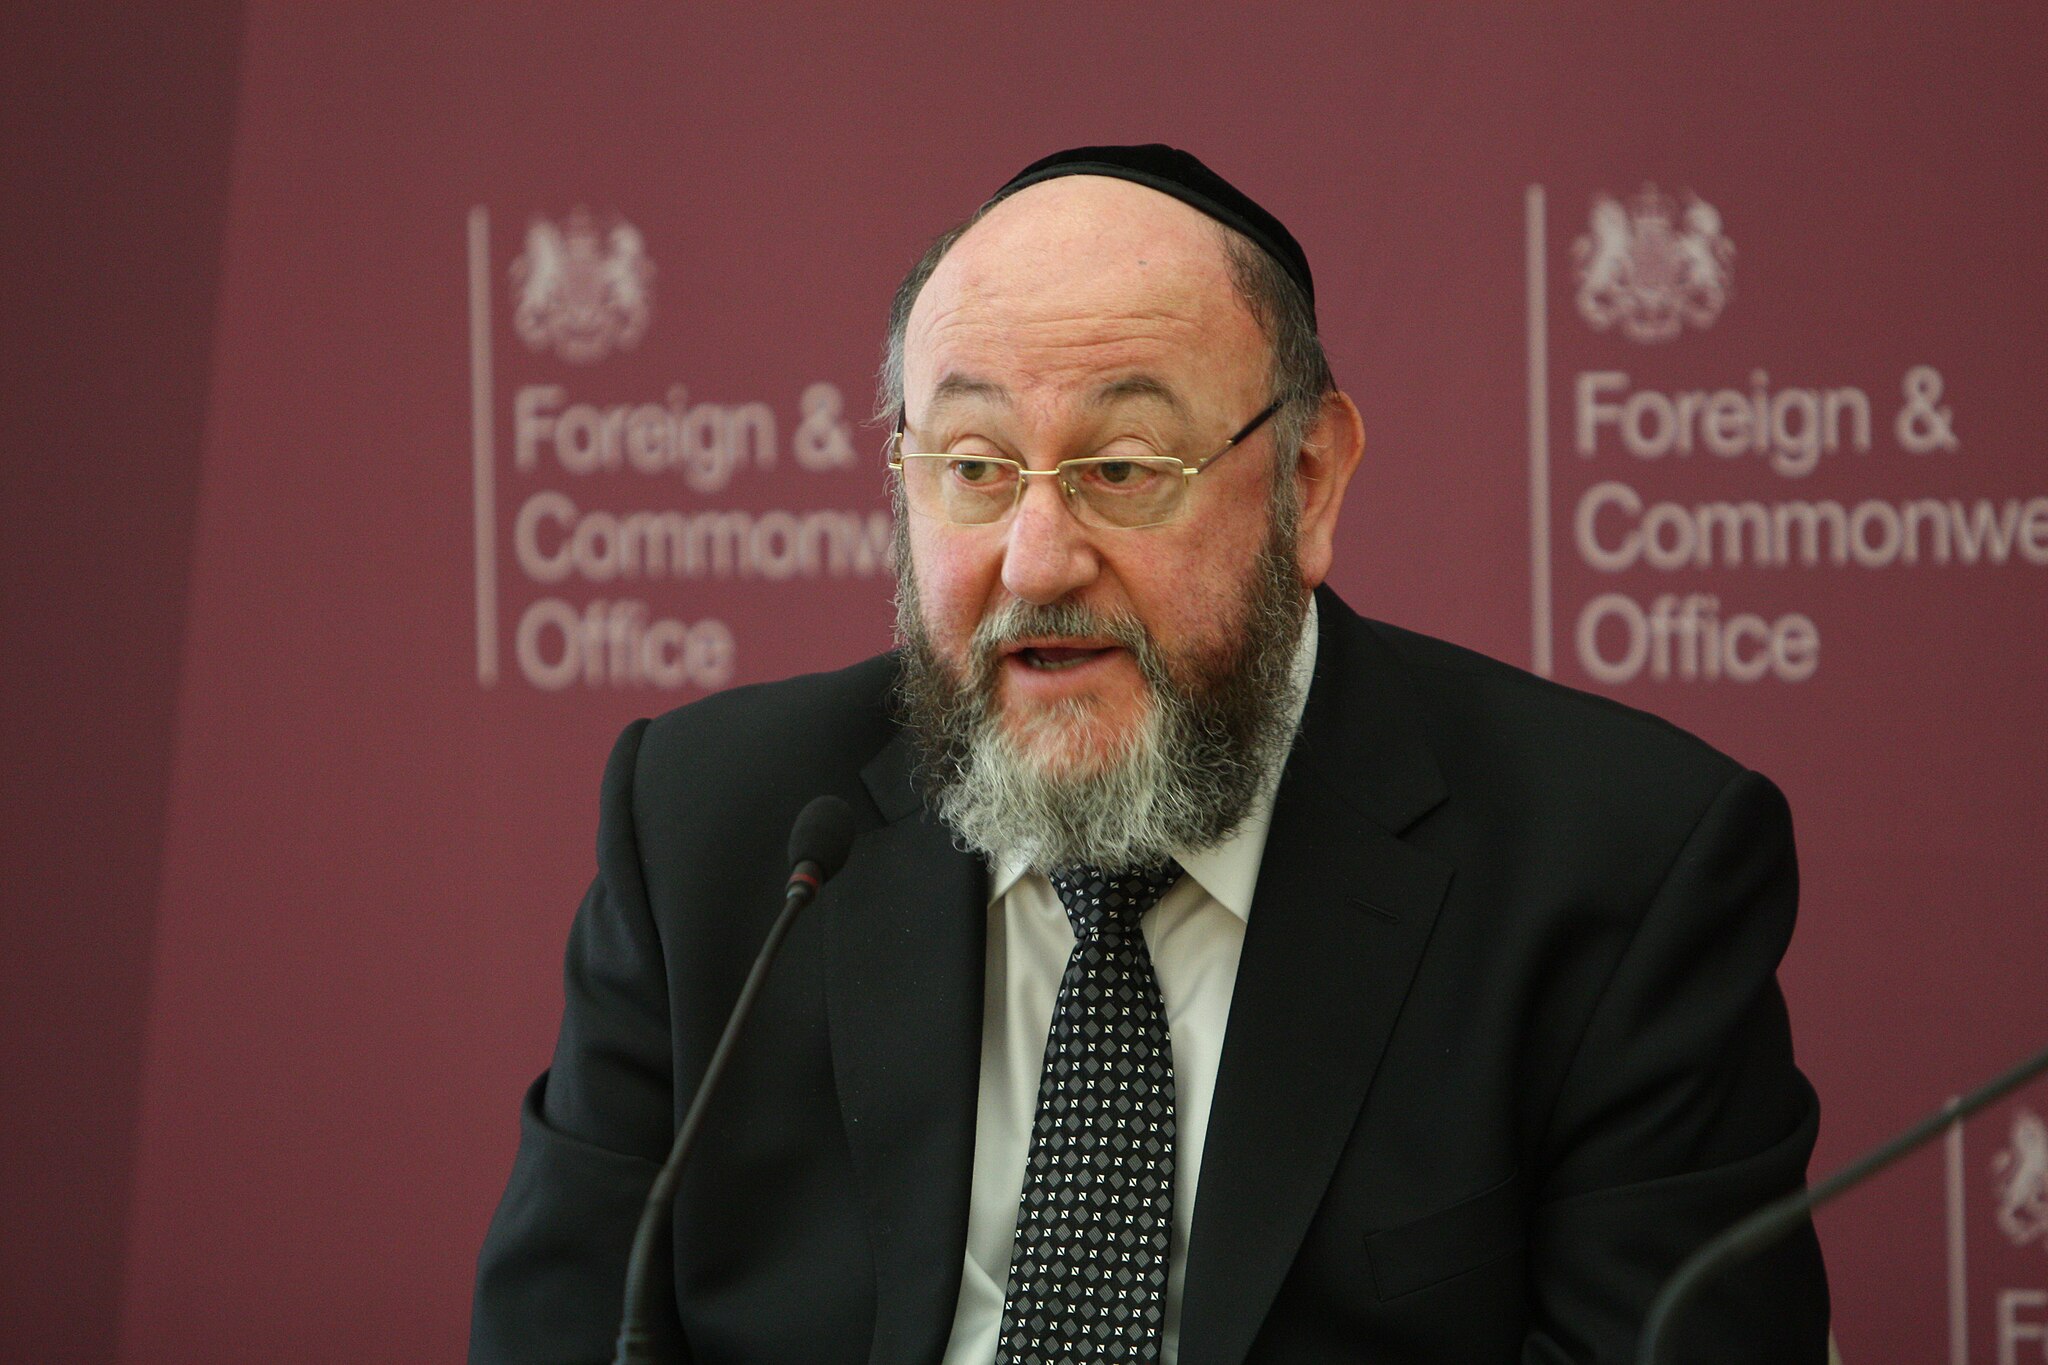 El rabino principal de Gran Bretaña, Efraim Mirvis, dando una charla en Londres en el año 2015. Foto: Foreign and Commonwealth Office/ CC BY 2.0 Wikimedia Commons.